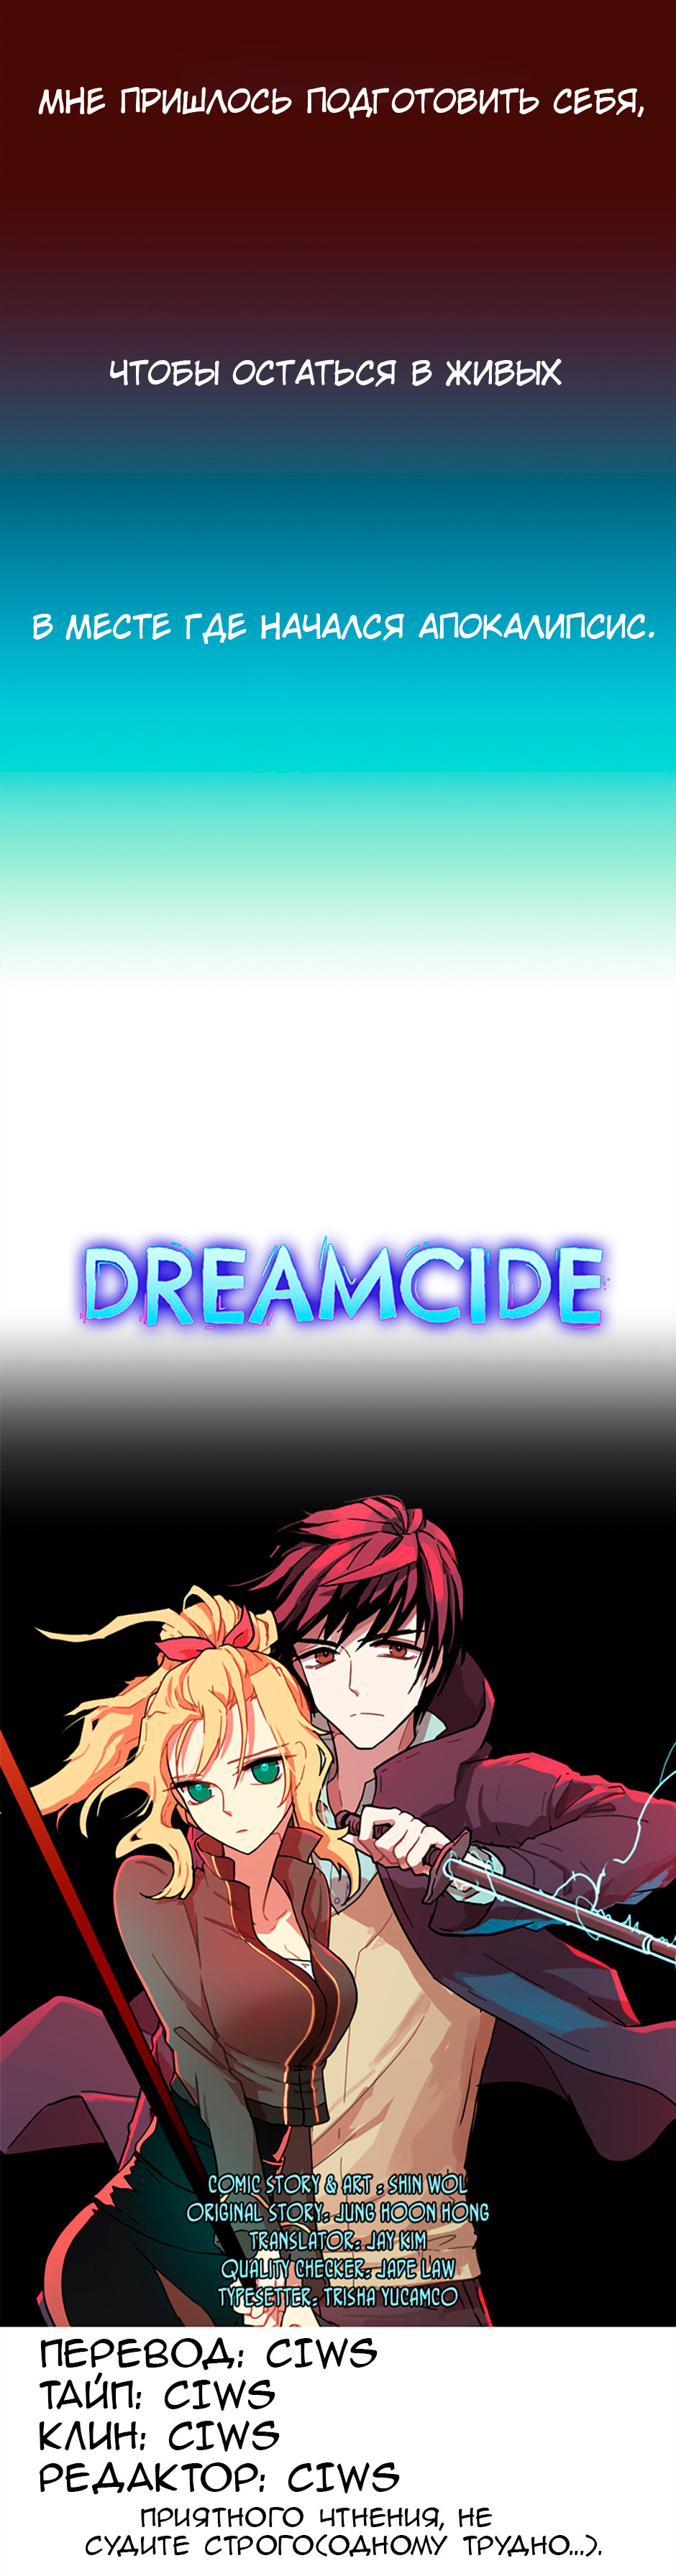 Dreamcide 1 - 1 Странный сон